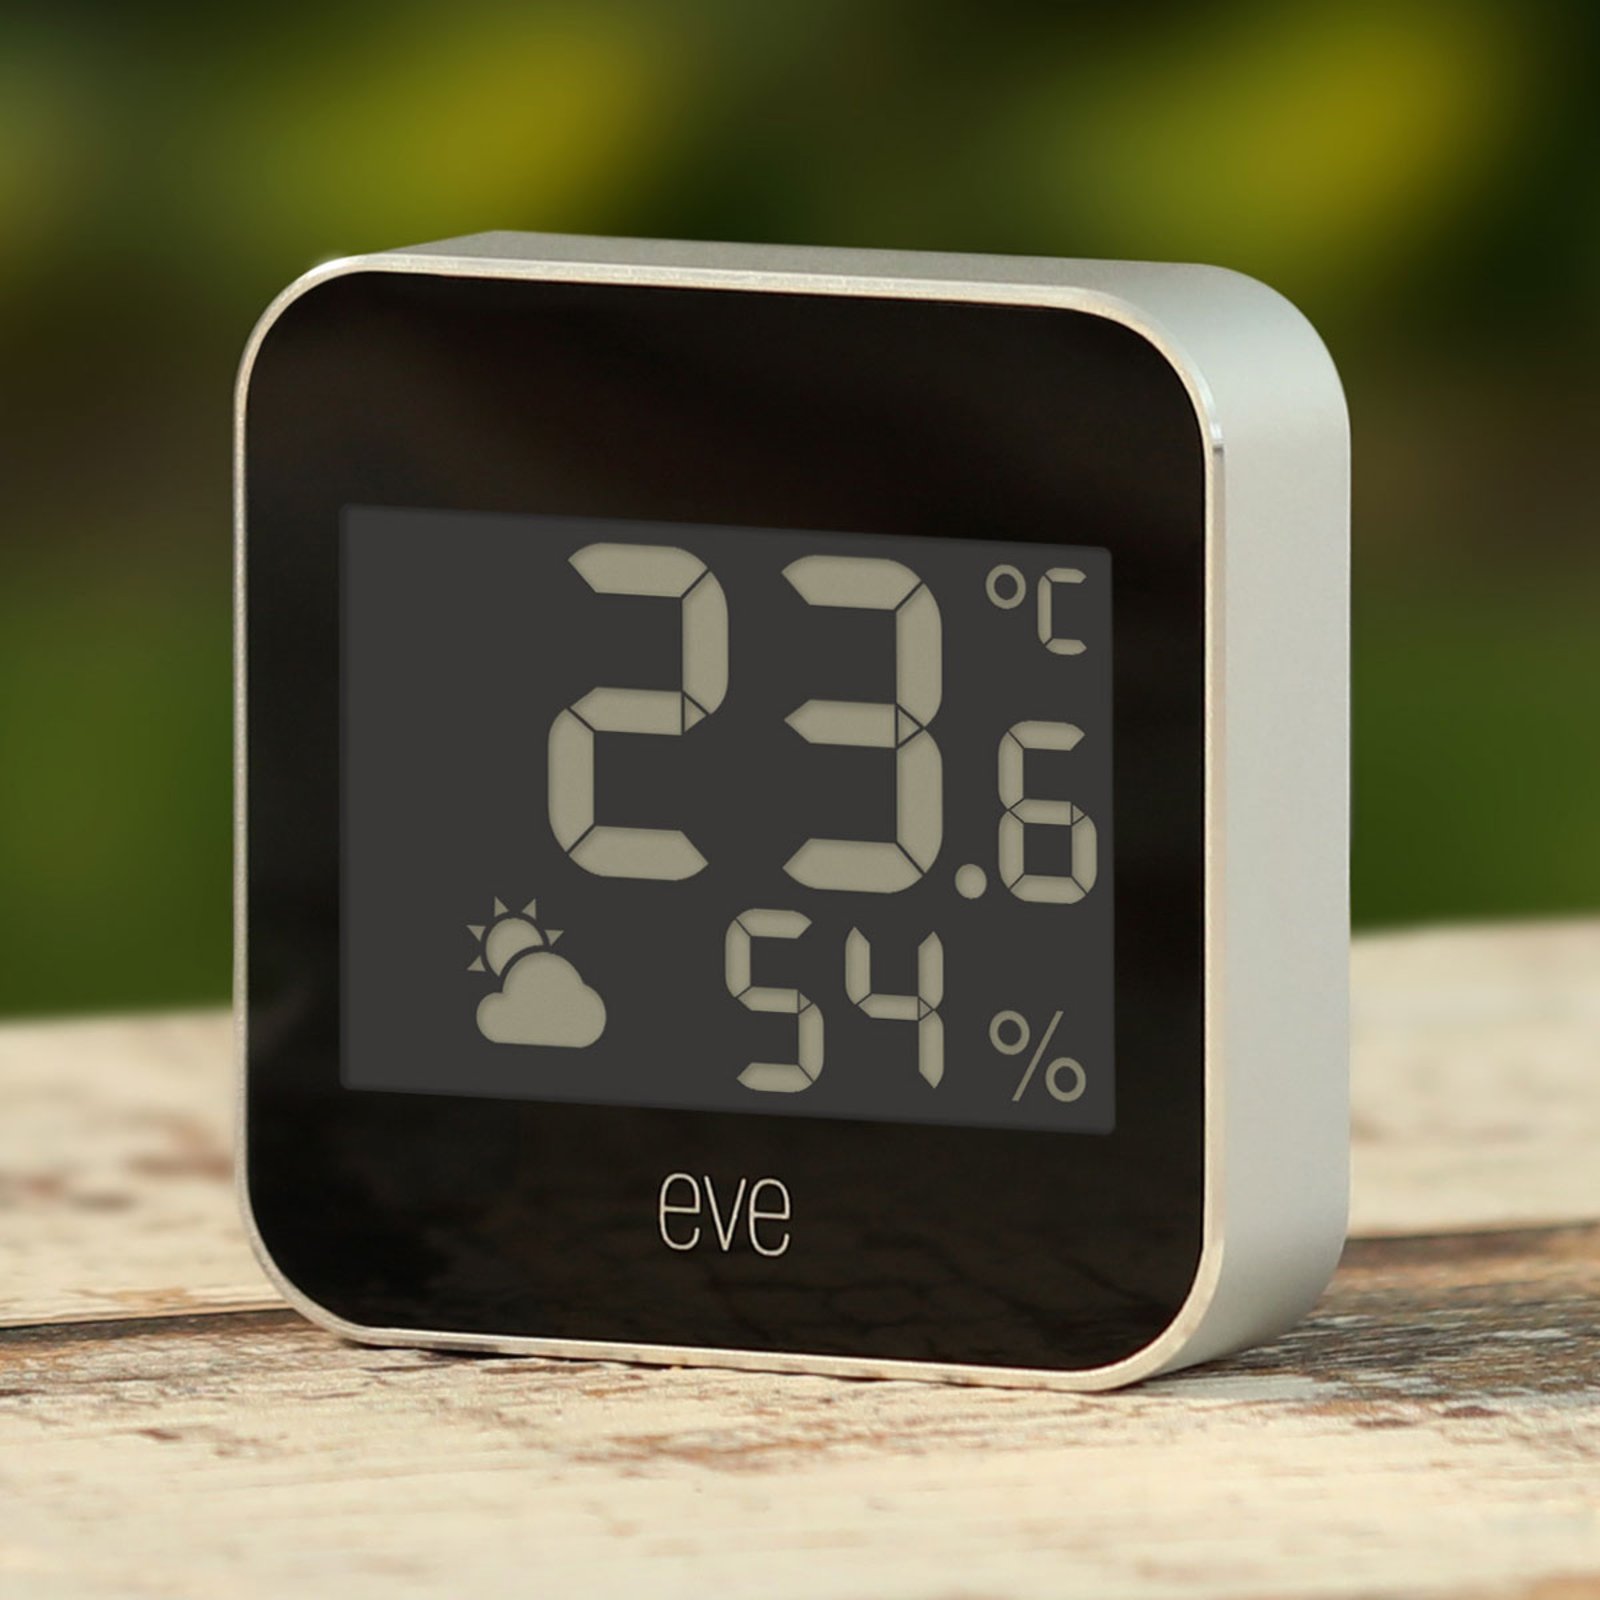 Eve Weather station météo Smart, compatible Thread